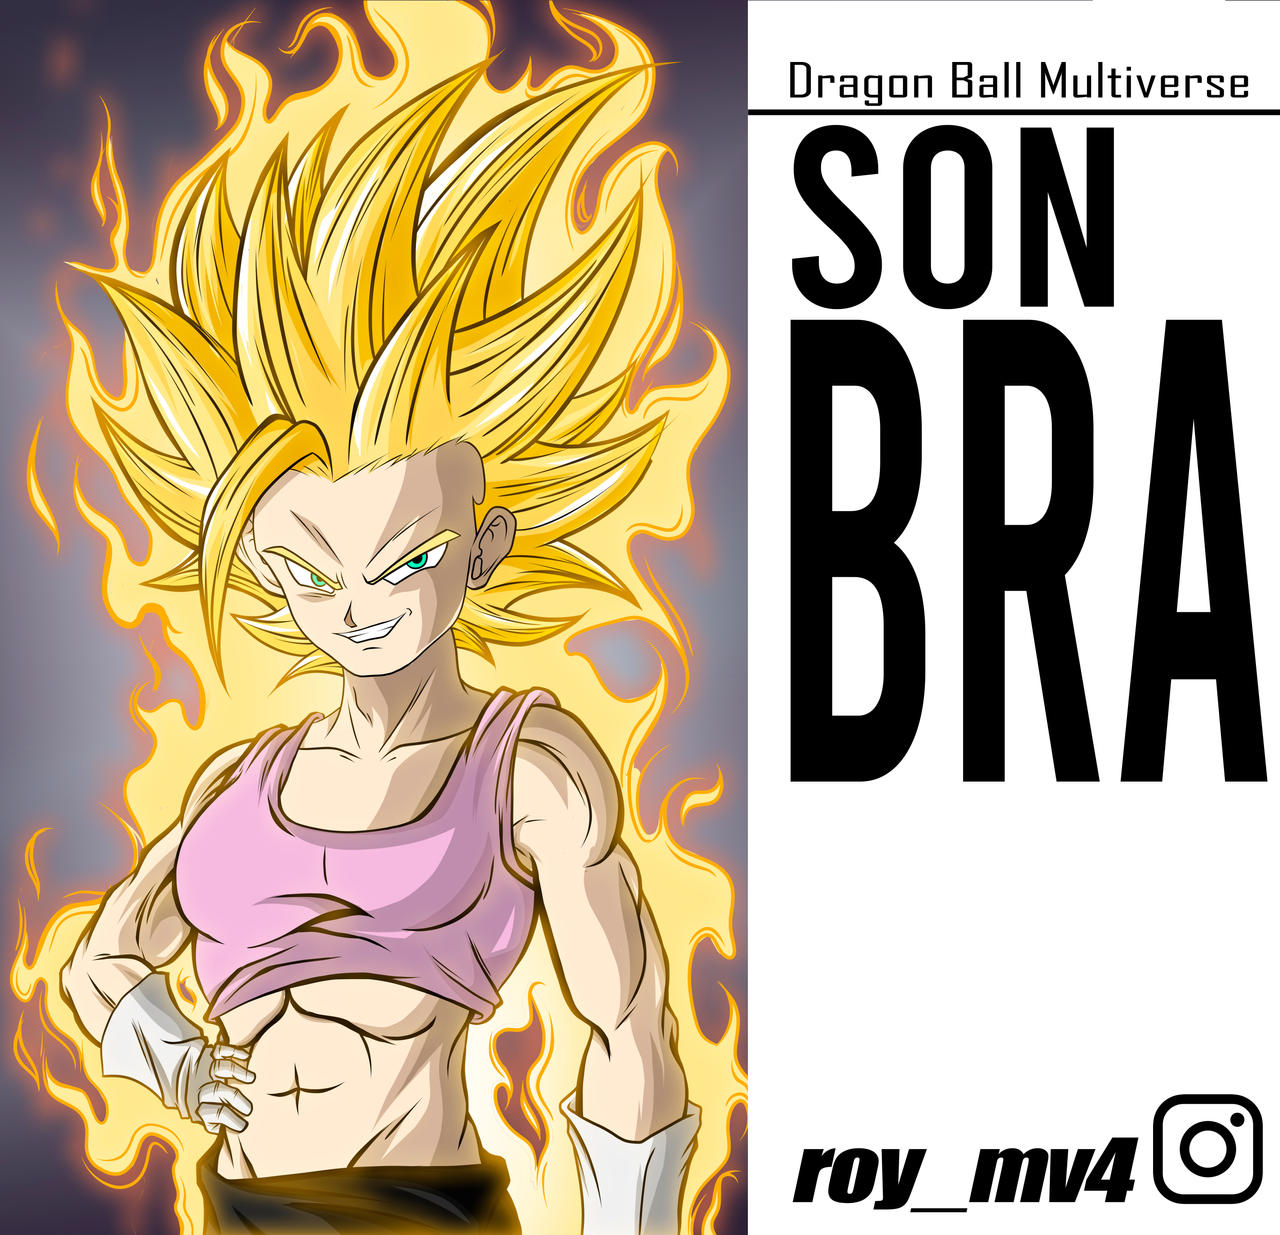 SON BRA by salvamakoto on DeviantArt  Dragon ball image, Anime dragon ball  super, Anime dragon ball